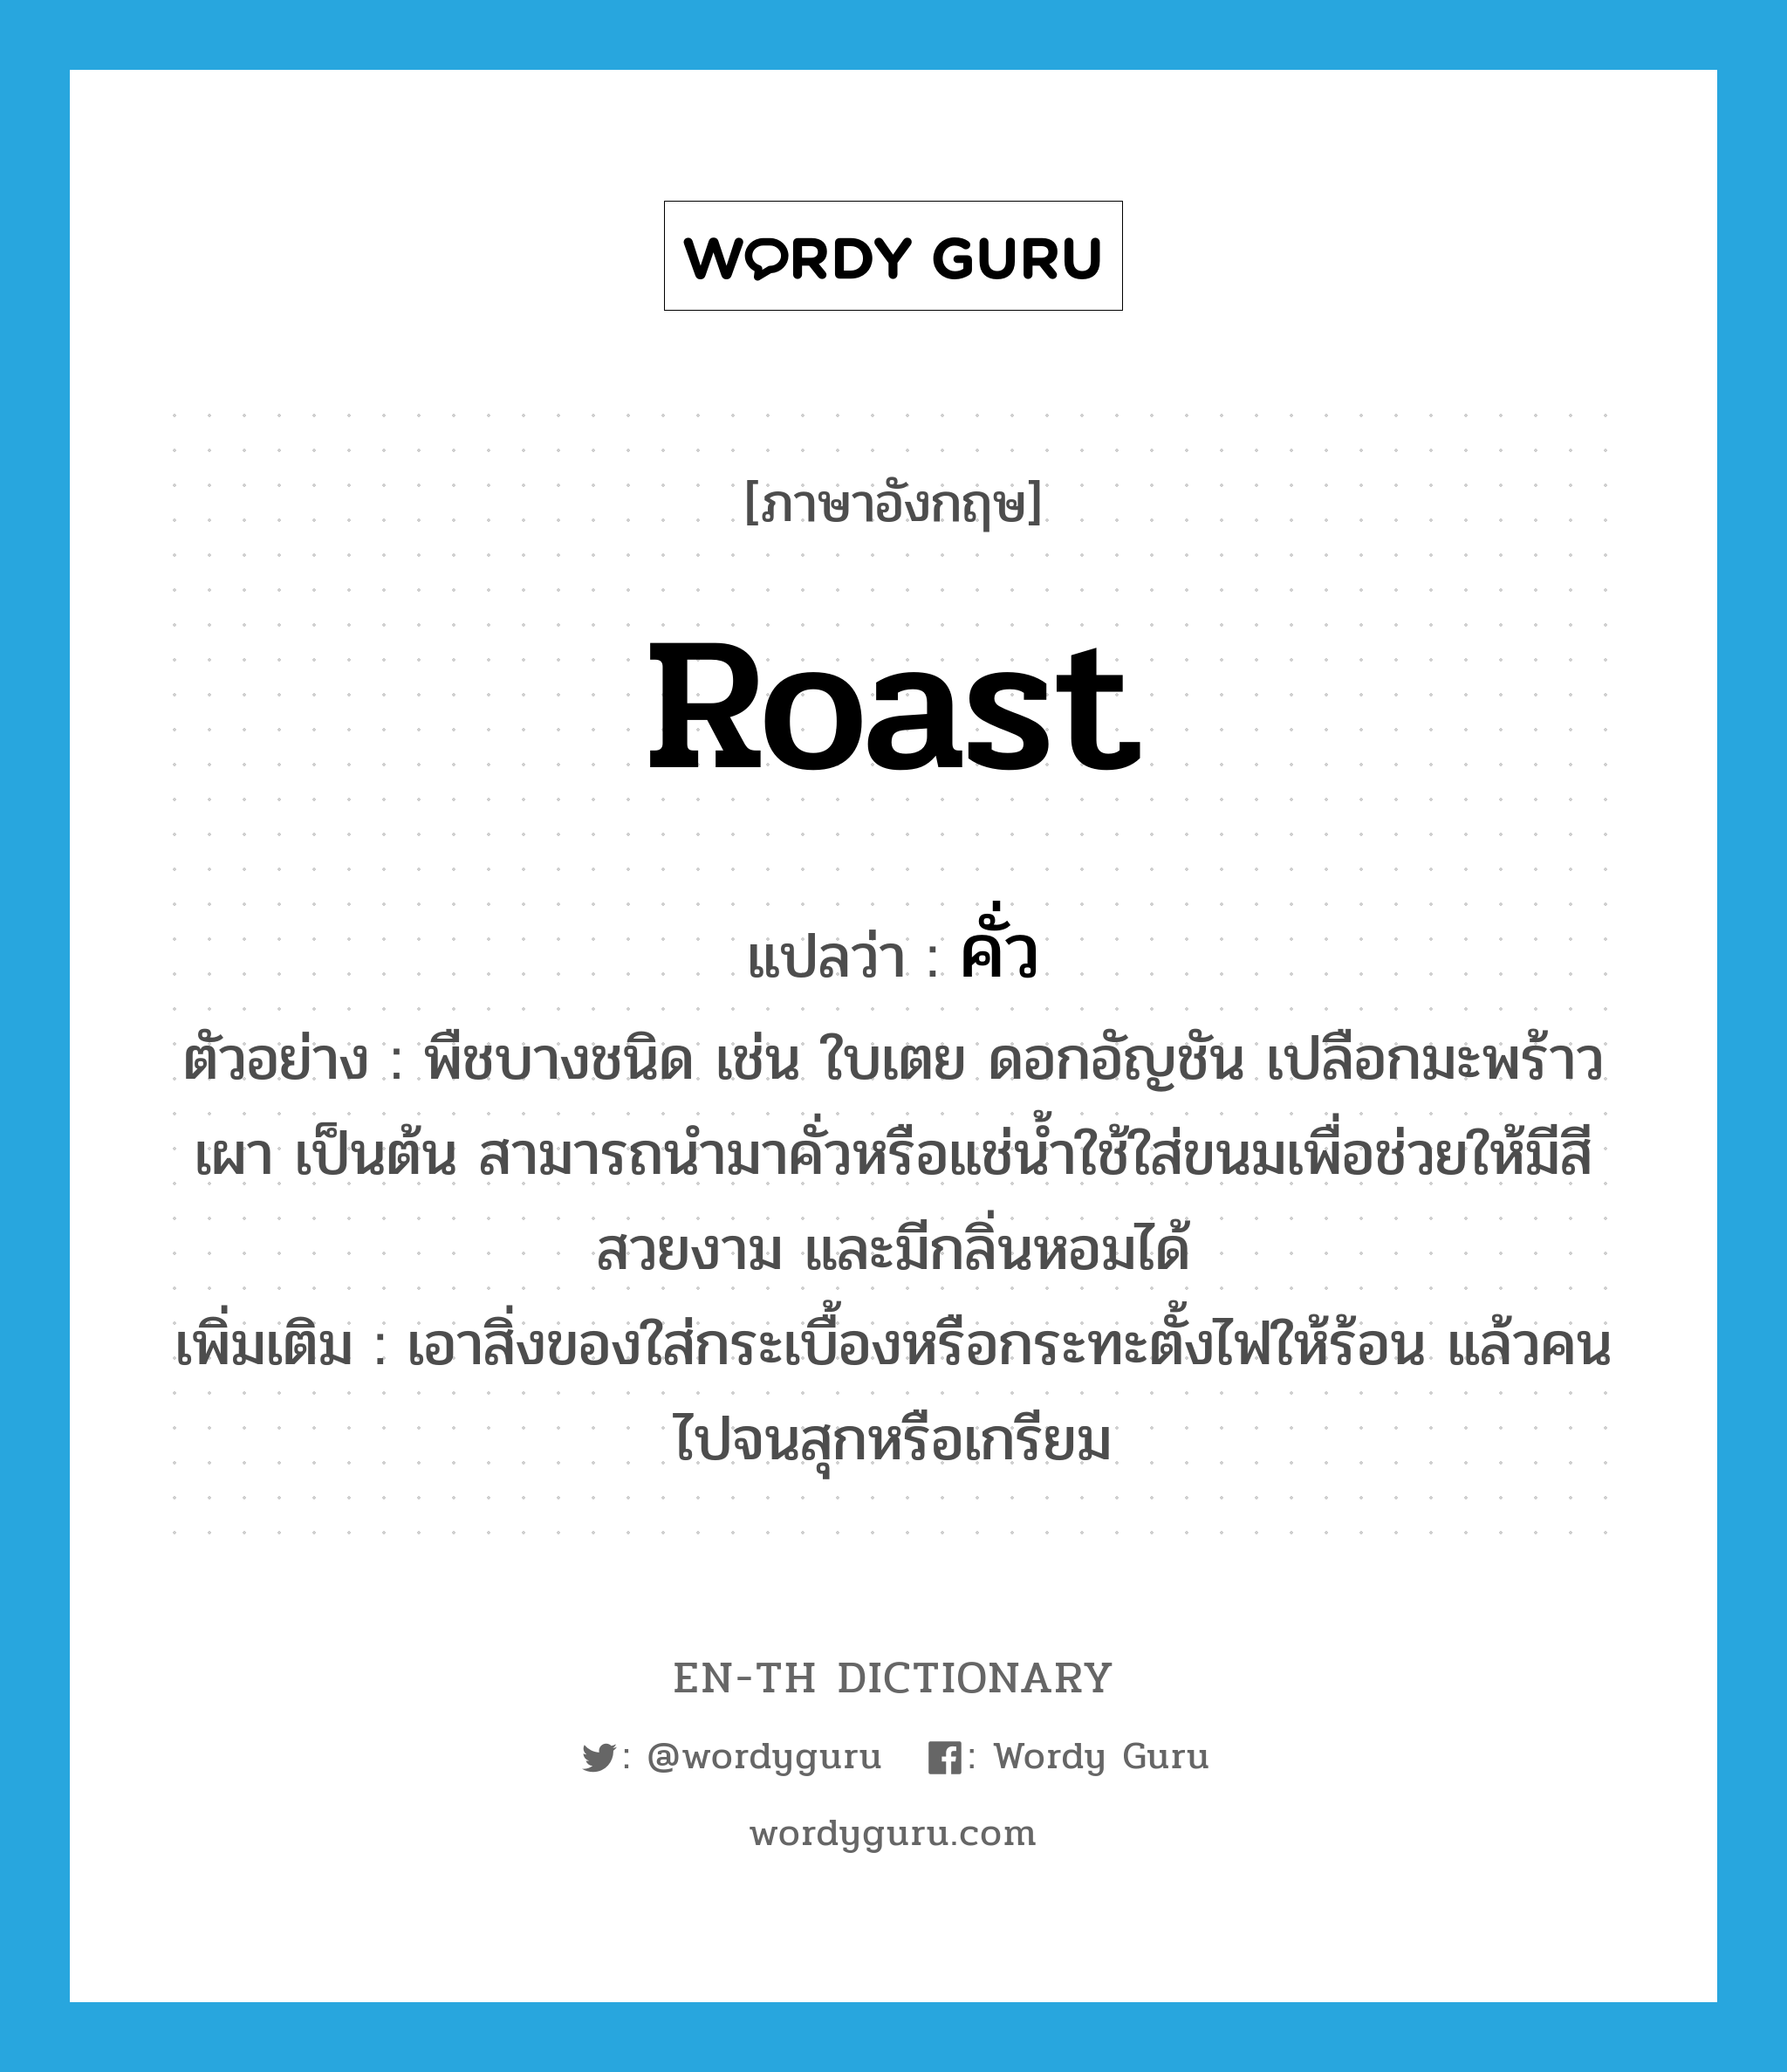 roast แปลว่า?, คำศัพท์ภาษาอังกฤษ roast แปลว่า คั่ว ประเภท ADJ ตัวอย่าง พืชบางชนิด เช่น ใบเตย ดอกอัญชัน เปลือกมะพร้าวเผา เป็นต้น สามารถนำมาคั่วหรือแช่น้ำใช้ใส่ขนมเพื่อช่วยให้มีสีสวยงาม และมีกลิ่นหอมได้ เพิ่มเติม เอาสิ่งของใส่กระเบื้องหรือกระทะตั้งไฟให้ร้อน แล้วคนไปจนสุกหรือเกรียม หมวด ADJ